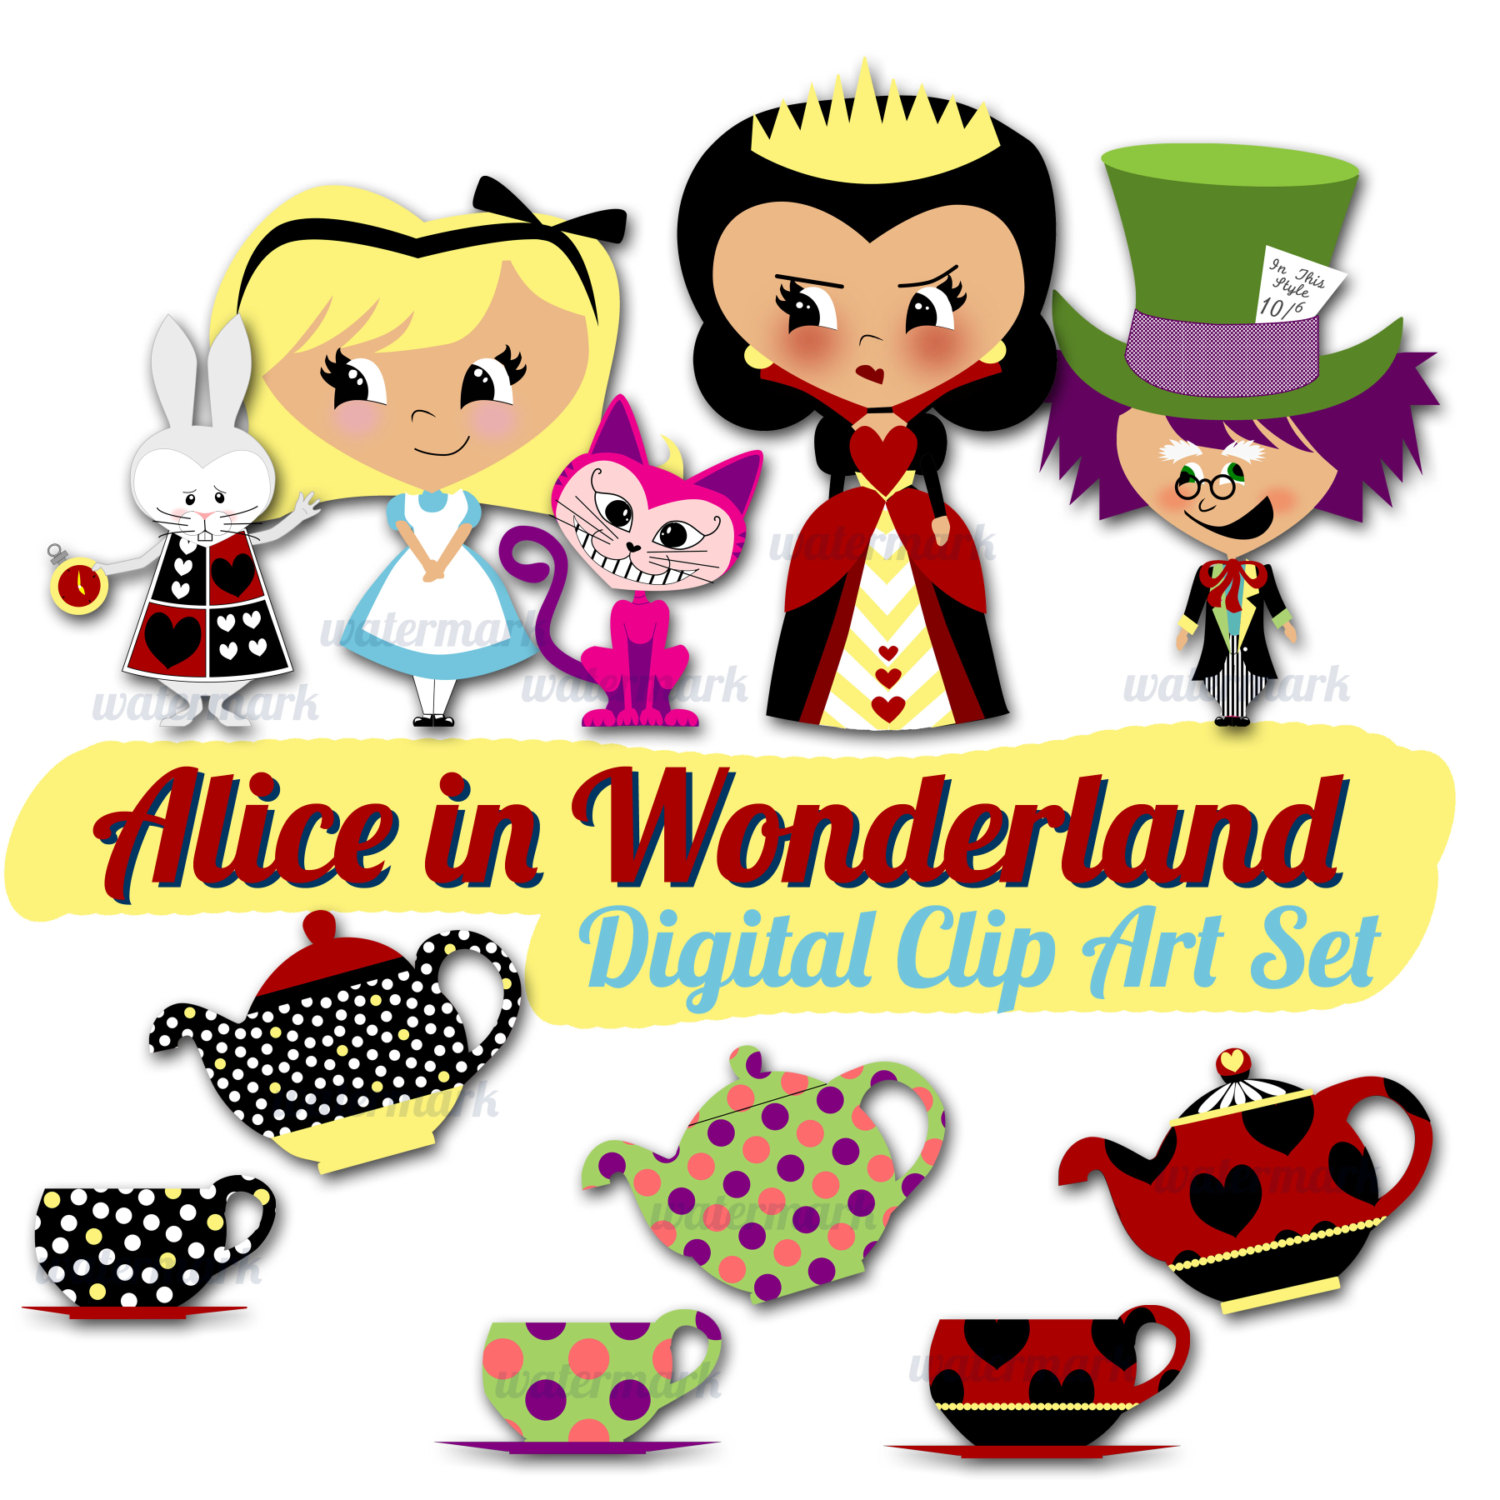 Alice in Wonderland free downloads